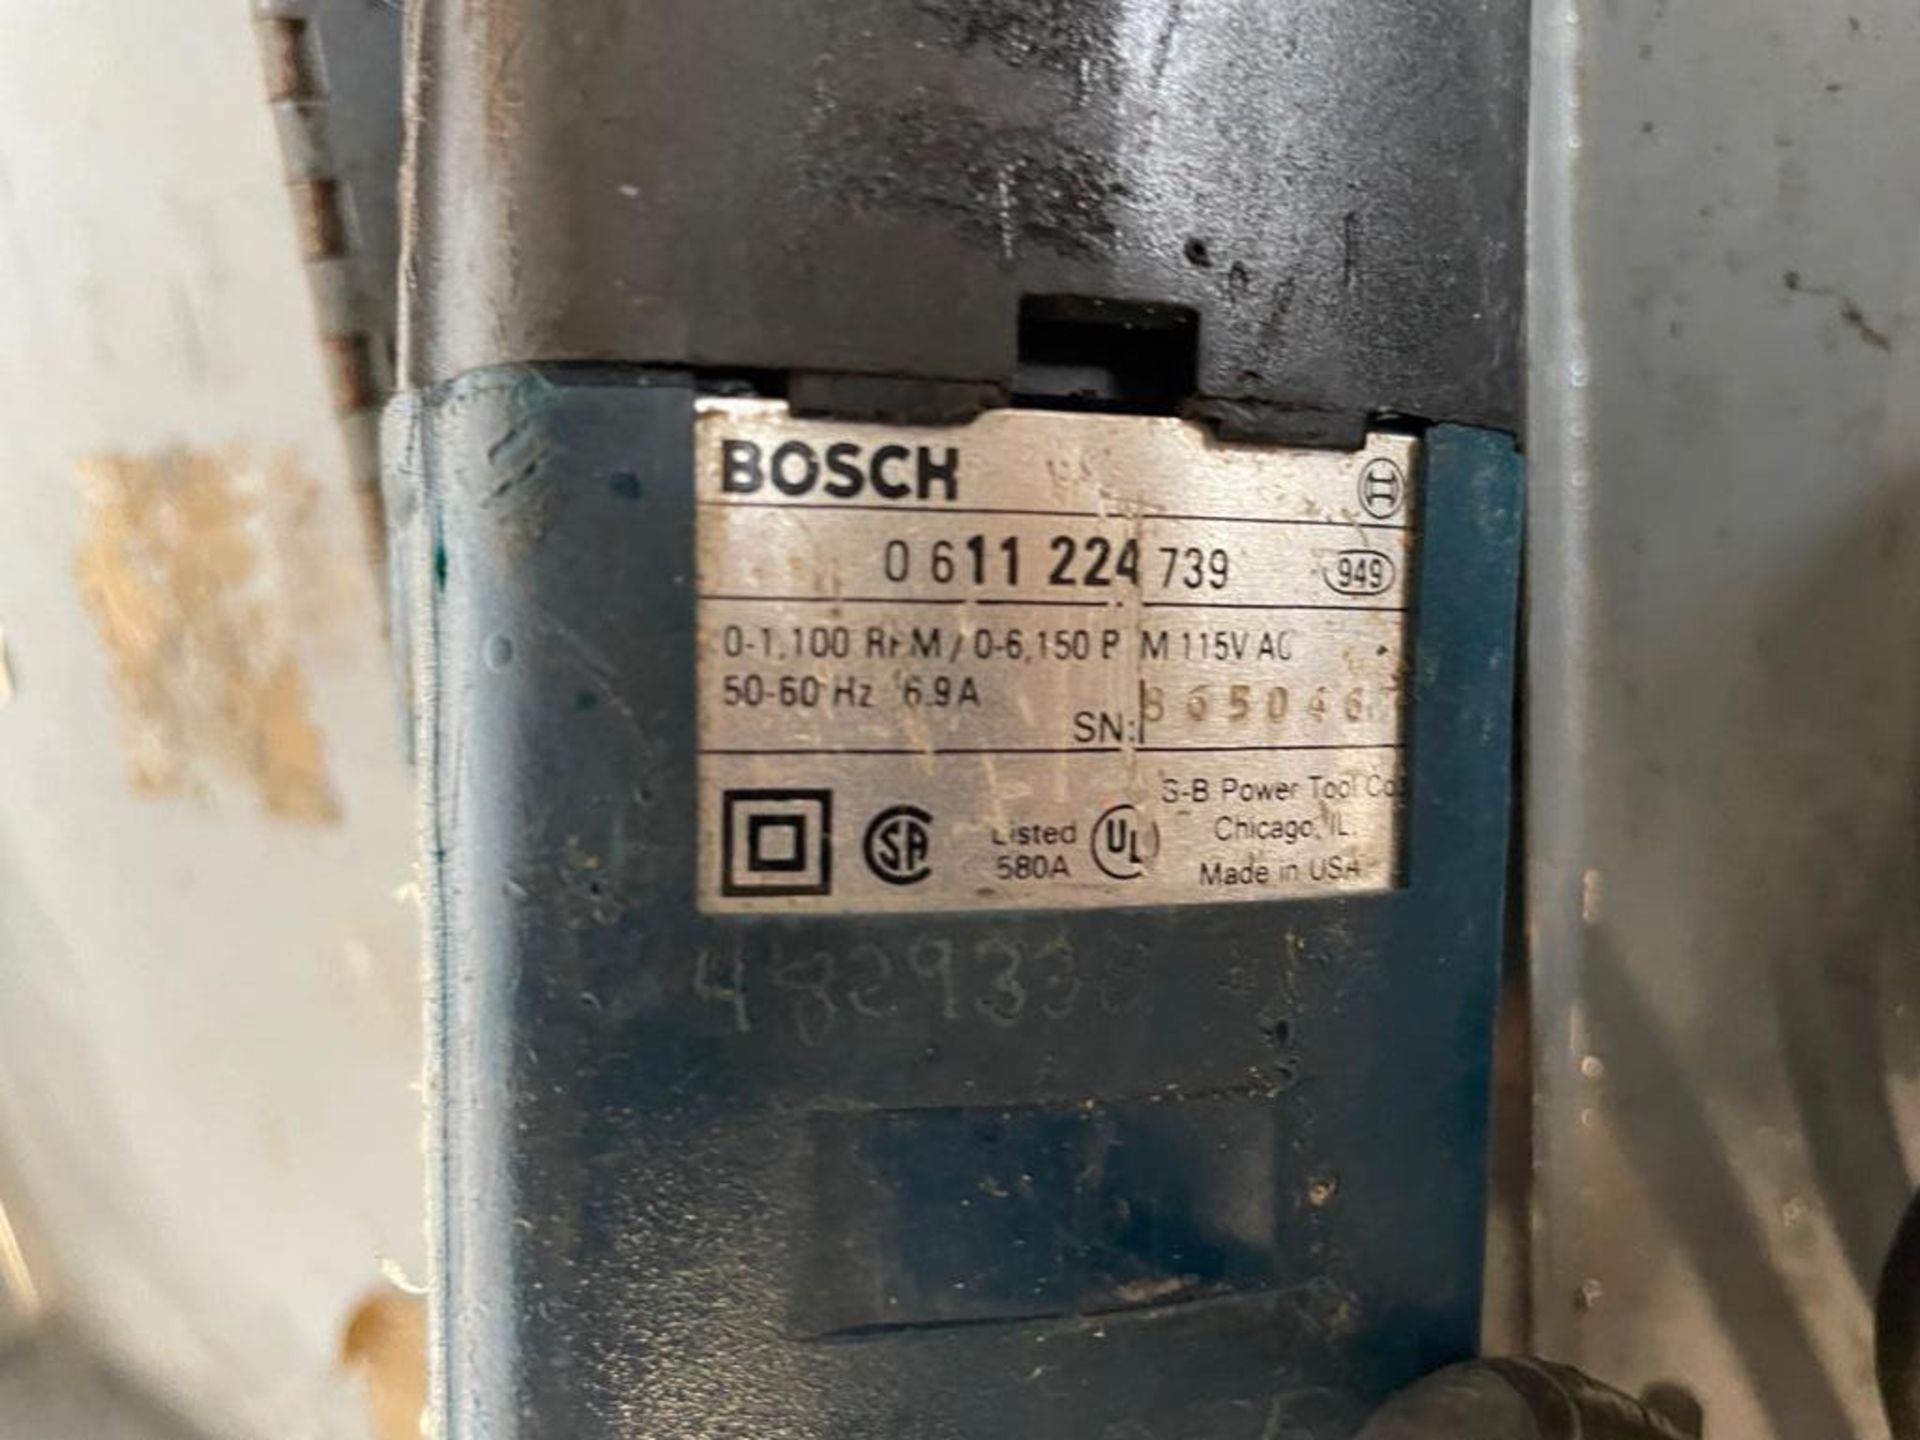 Bosch Bulldog 11224VSR Variable Speed Hammer Drill, 120V. Located in Hazelwood, MO - Image 5 of 5